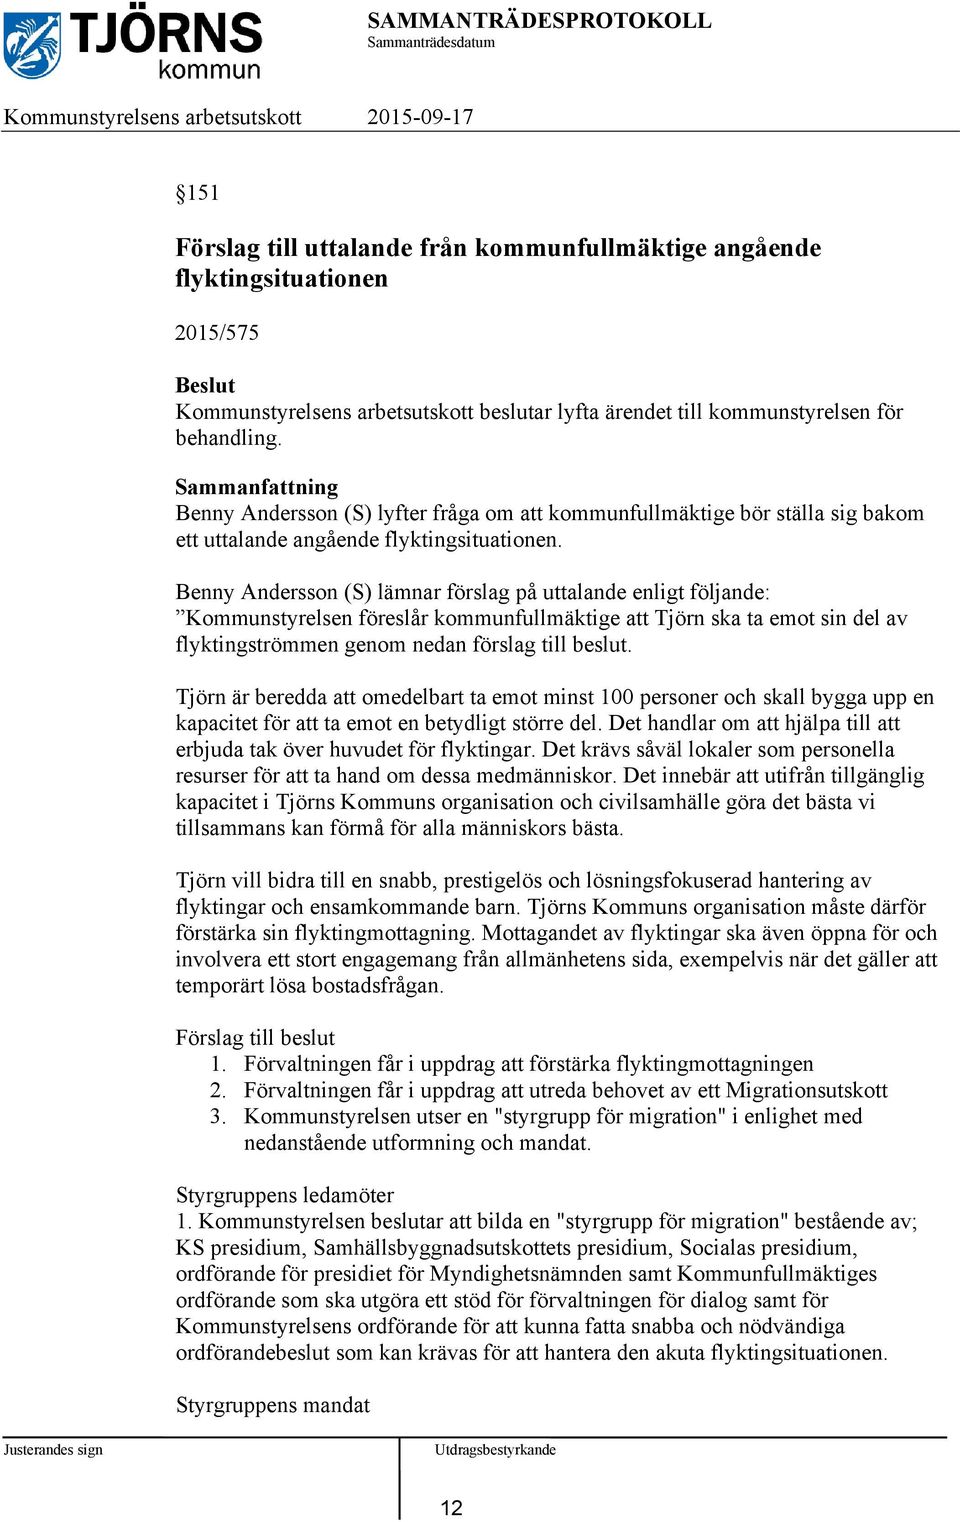 Benny Andersson (S) lämnar förslag på uttalande enligt följande: Kommunstyrelsen föreslår kommunfullmäktige att Tjörn ska ta emot sin del av flyktingströmmen genom nedan förslag till beslut.